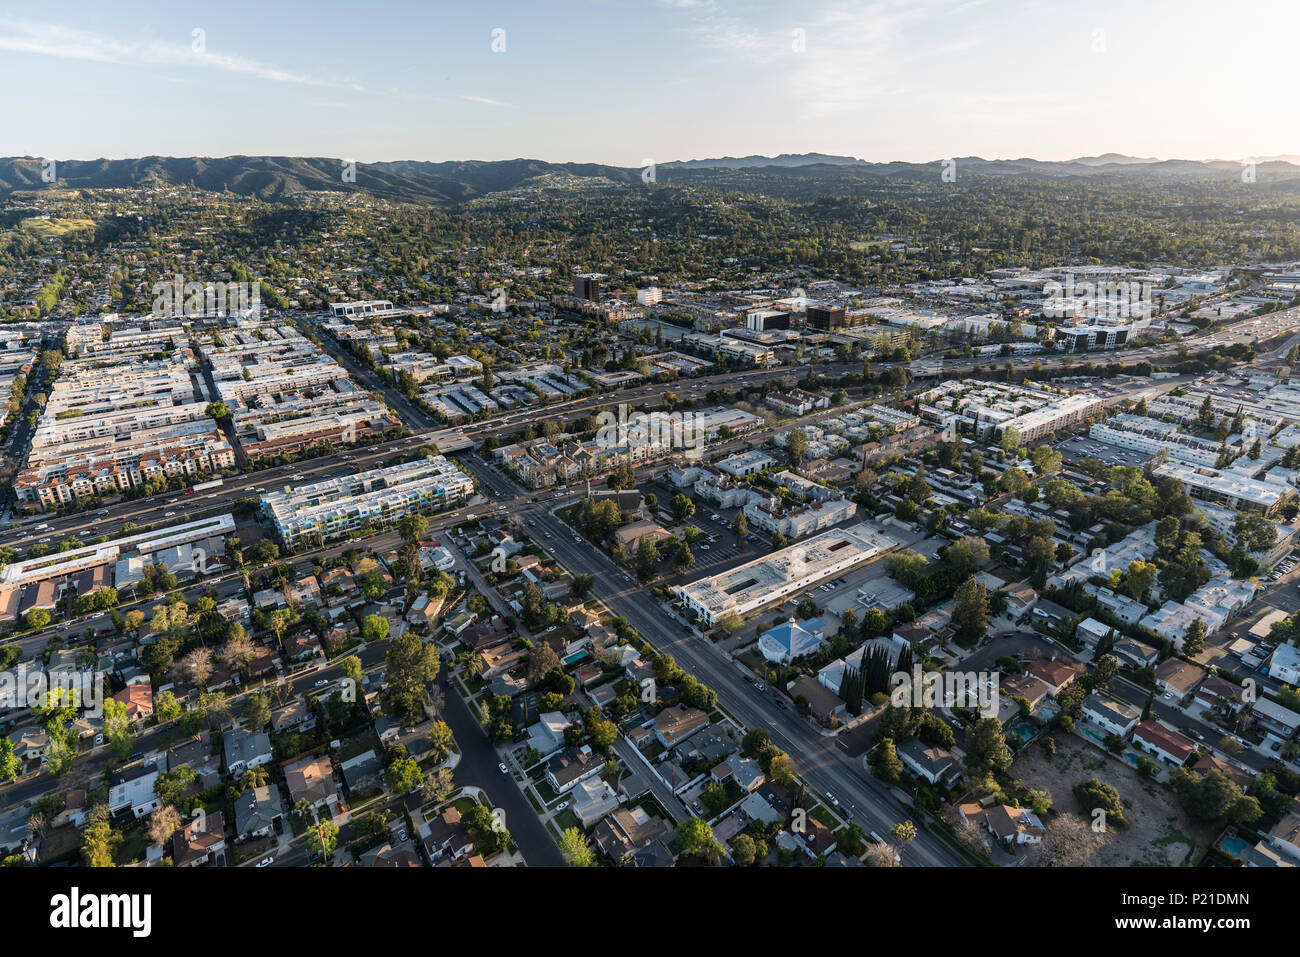 Eine Ansicht von Ventura 101 Autobahn bei Lindley Ave im San Fernando Valley Gegend von Los Angeles, Kalifornien. Stockfoto